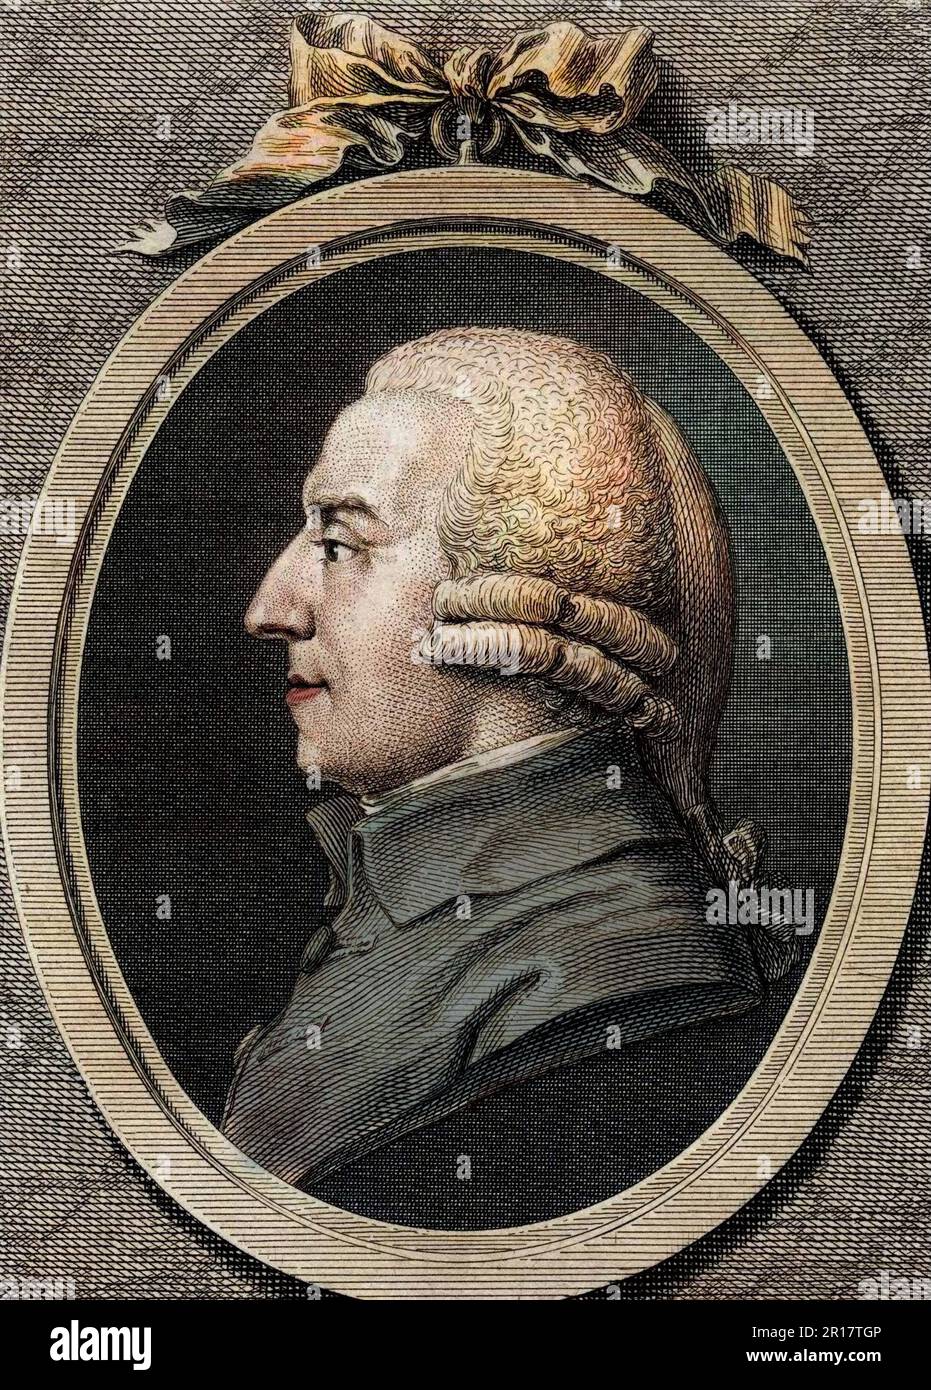 Portrait d'Adam Smith (1723 - 1790), philosophe et économiste écossais. Gravure du 19eme siecle. Foto Stock